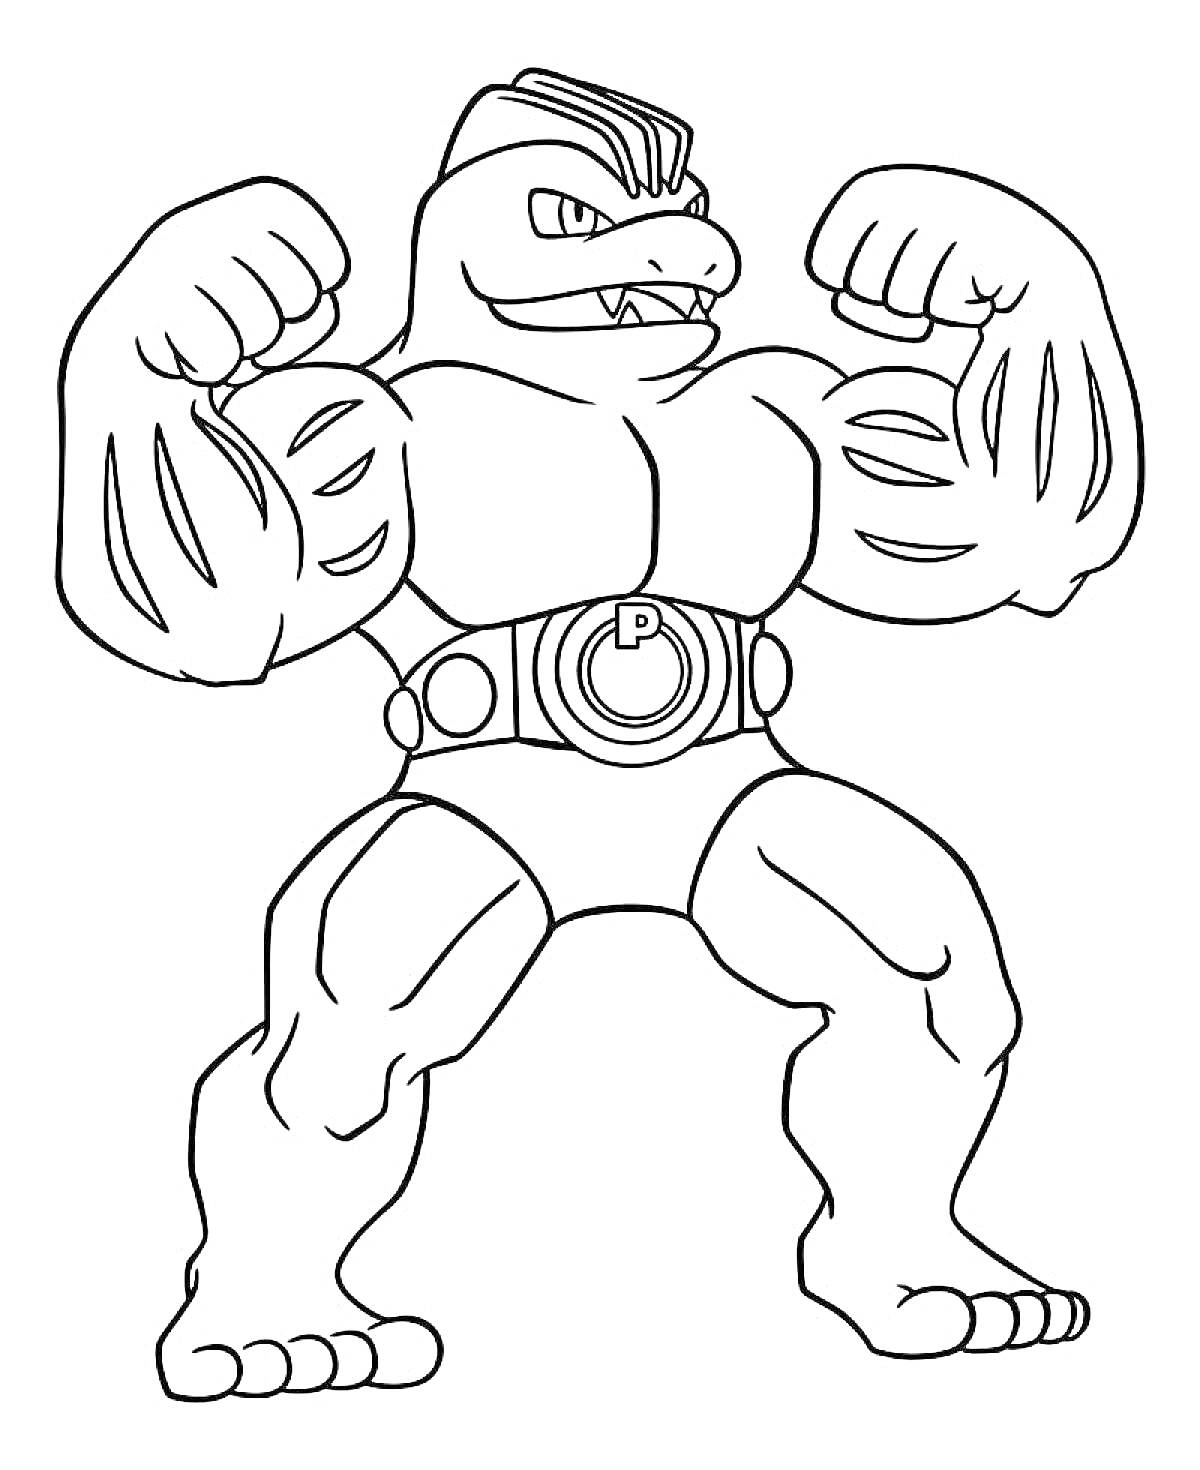 Супергерой Гуджитсу с крупными мускулами, ремнем с пряжкой и поднятыми кулаками.